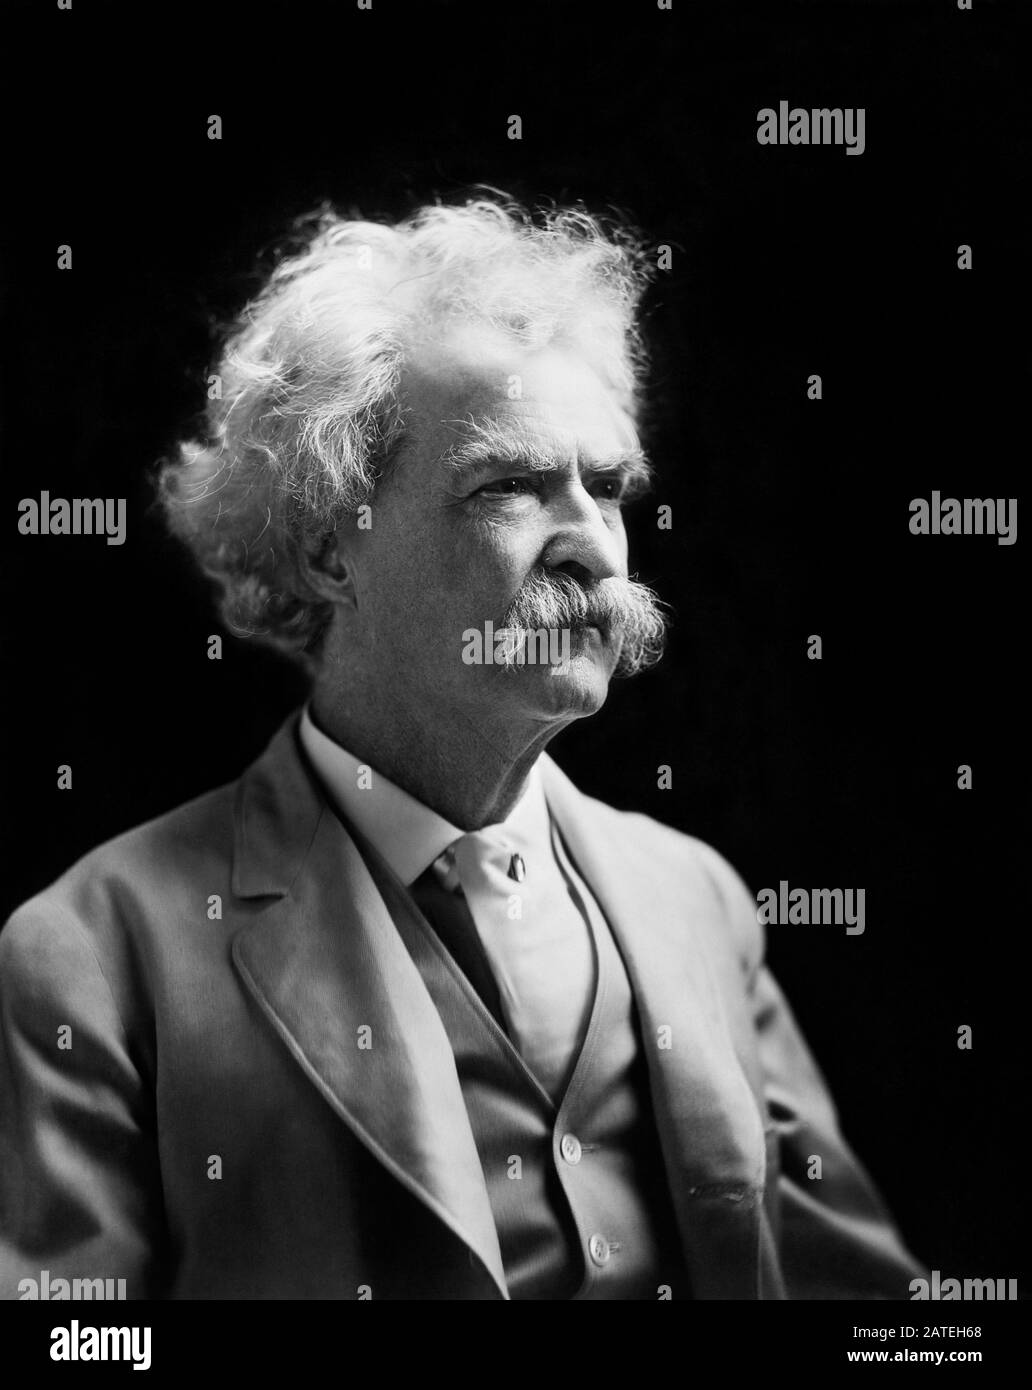 Vintage-Portrait-Foto des amerikanischen Schriftstellers und Humoristen Samuel Langhorne Klemens (zwischen 1835 und 1910), besser bekannt unter seinem Federnamen Mark Twain. Foto ca. 1907 von EINEM F Bradley aus New York. Stockfoto